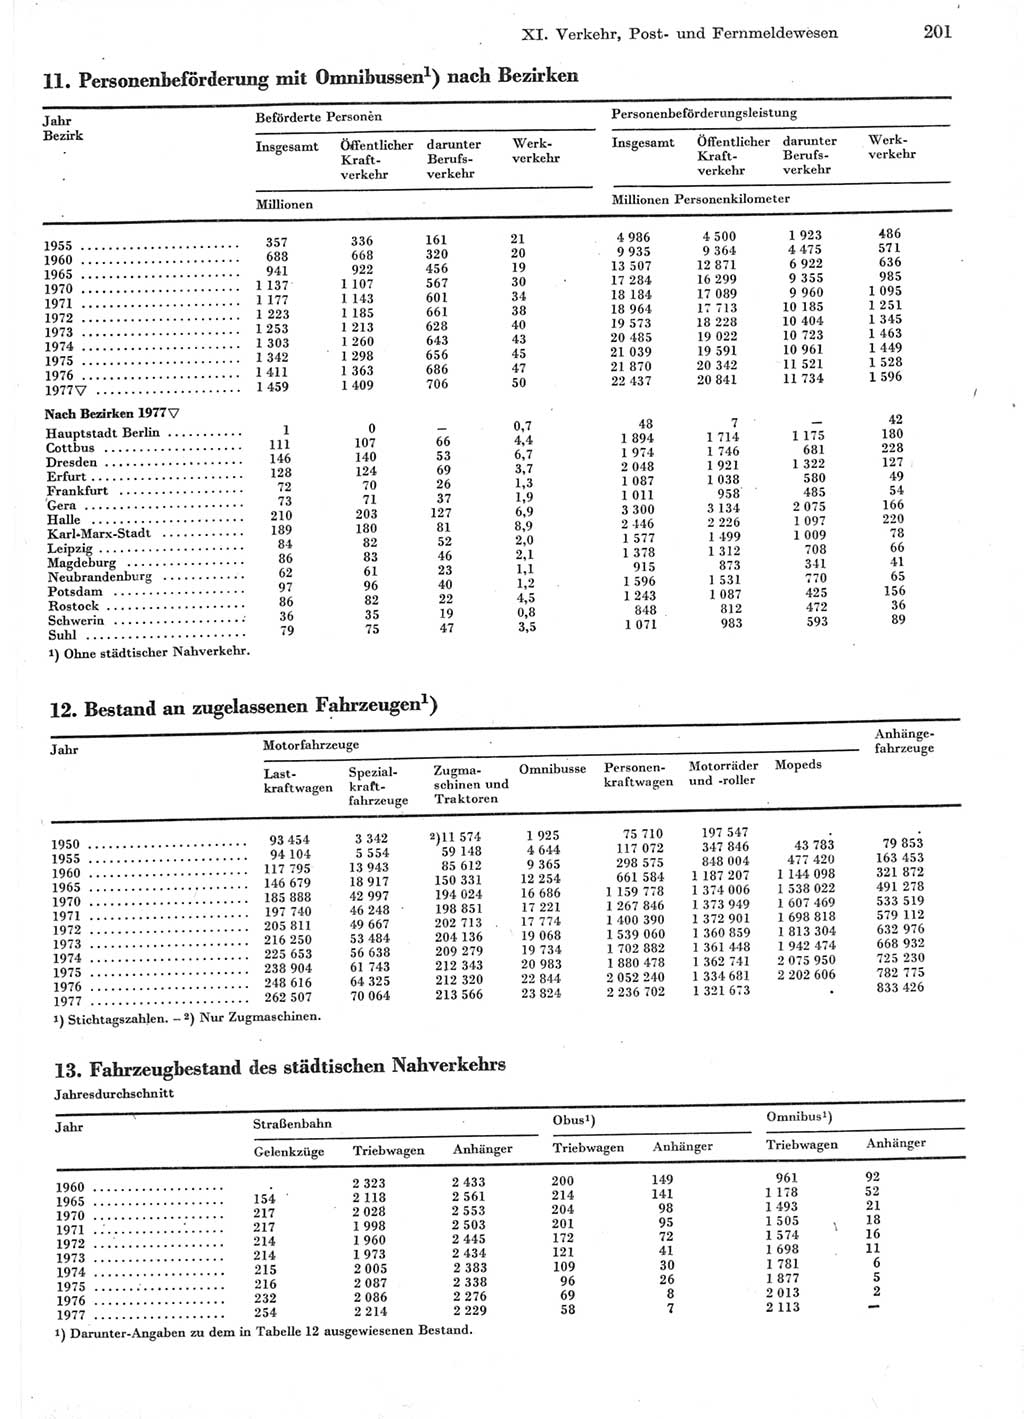 Statistisches Jahrbuch der Deutschen Demokratischen Republik (DDR) 1978, Seite 201 (Stat. Jb. DDR 1978, S. 201)